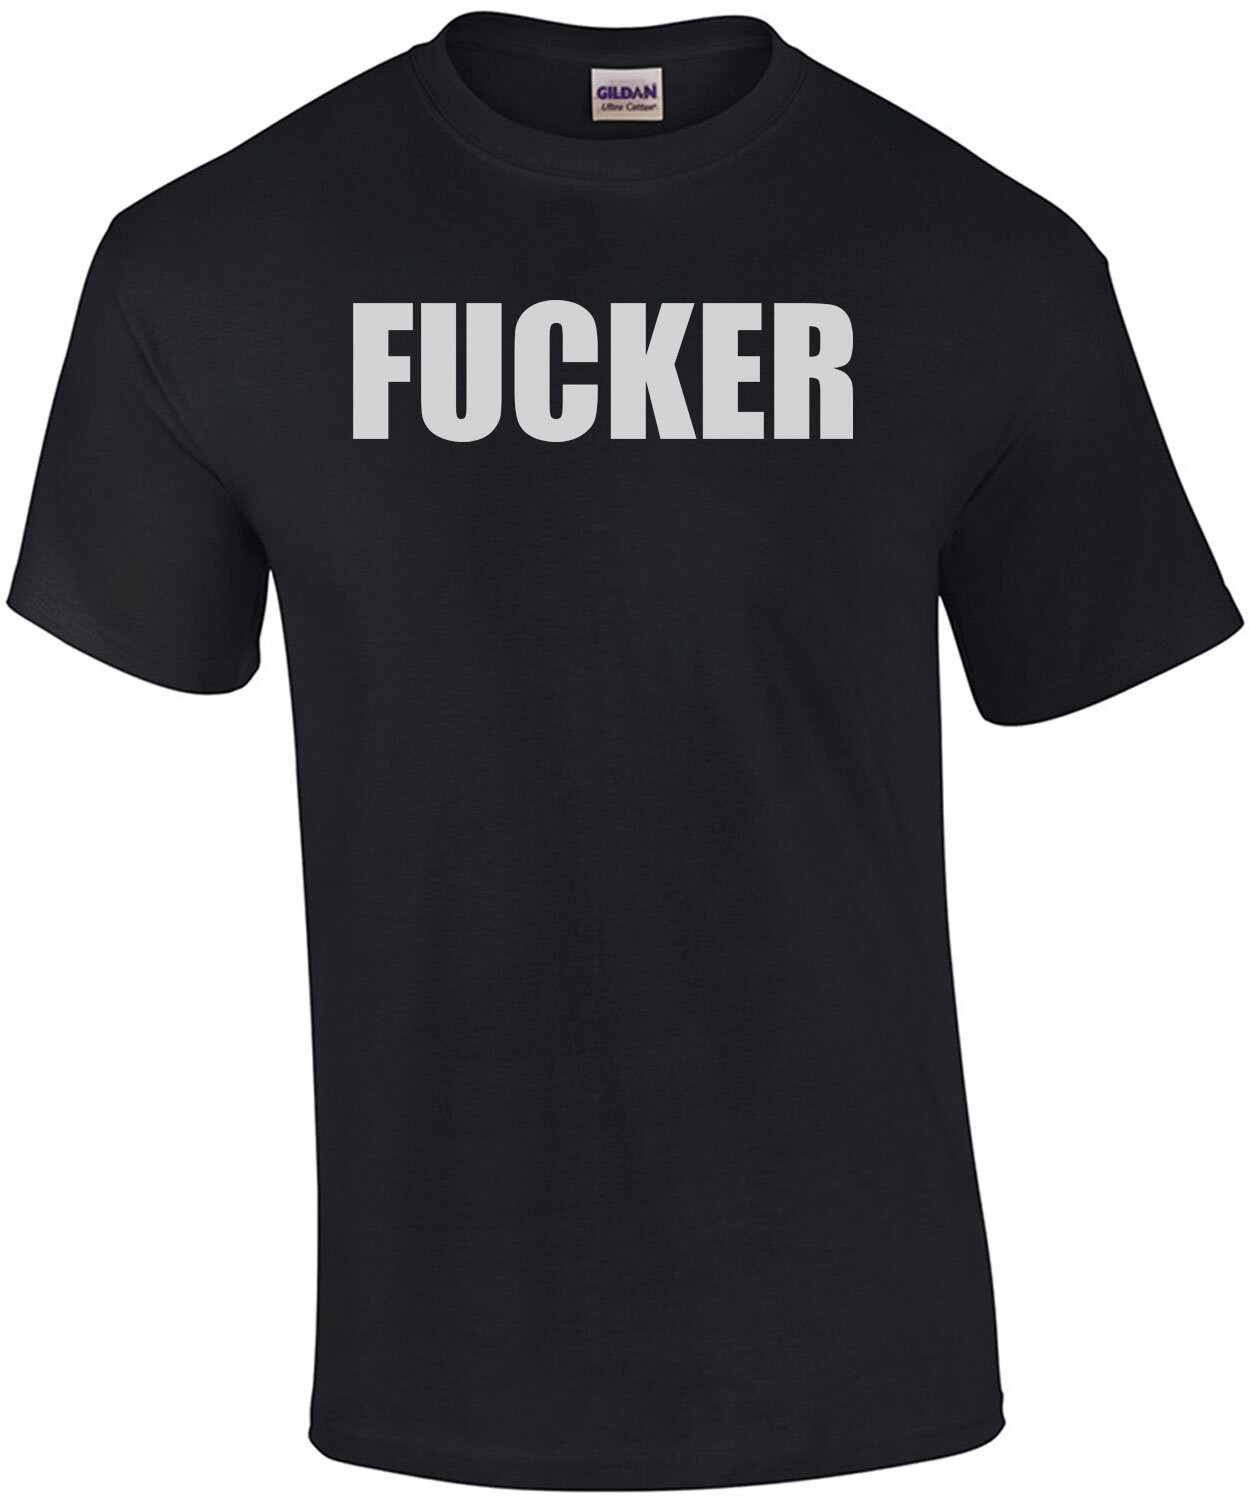 FUCKER - Offensive Rude T-Shirt